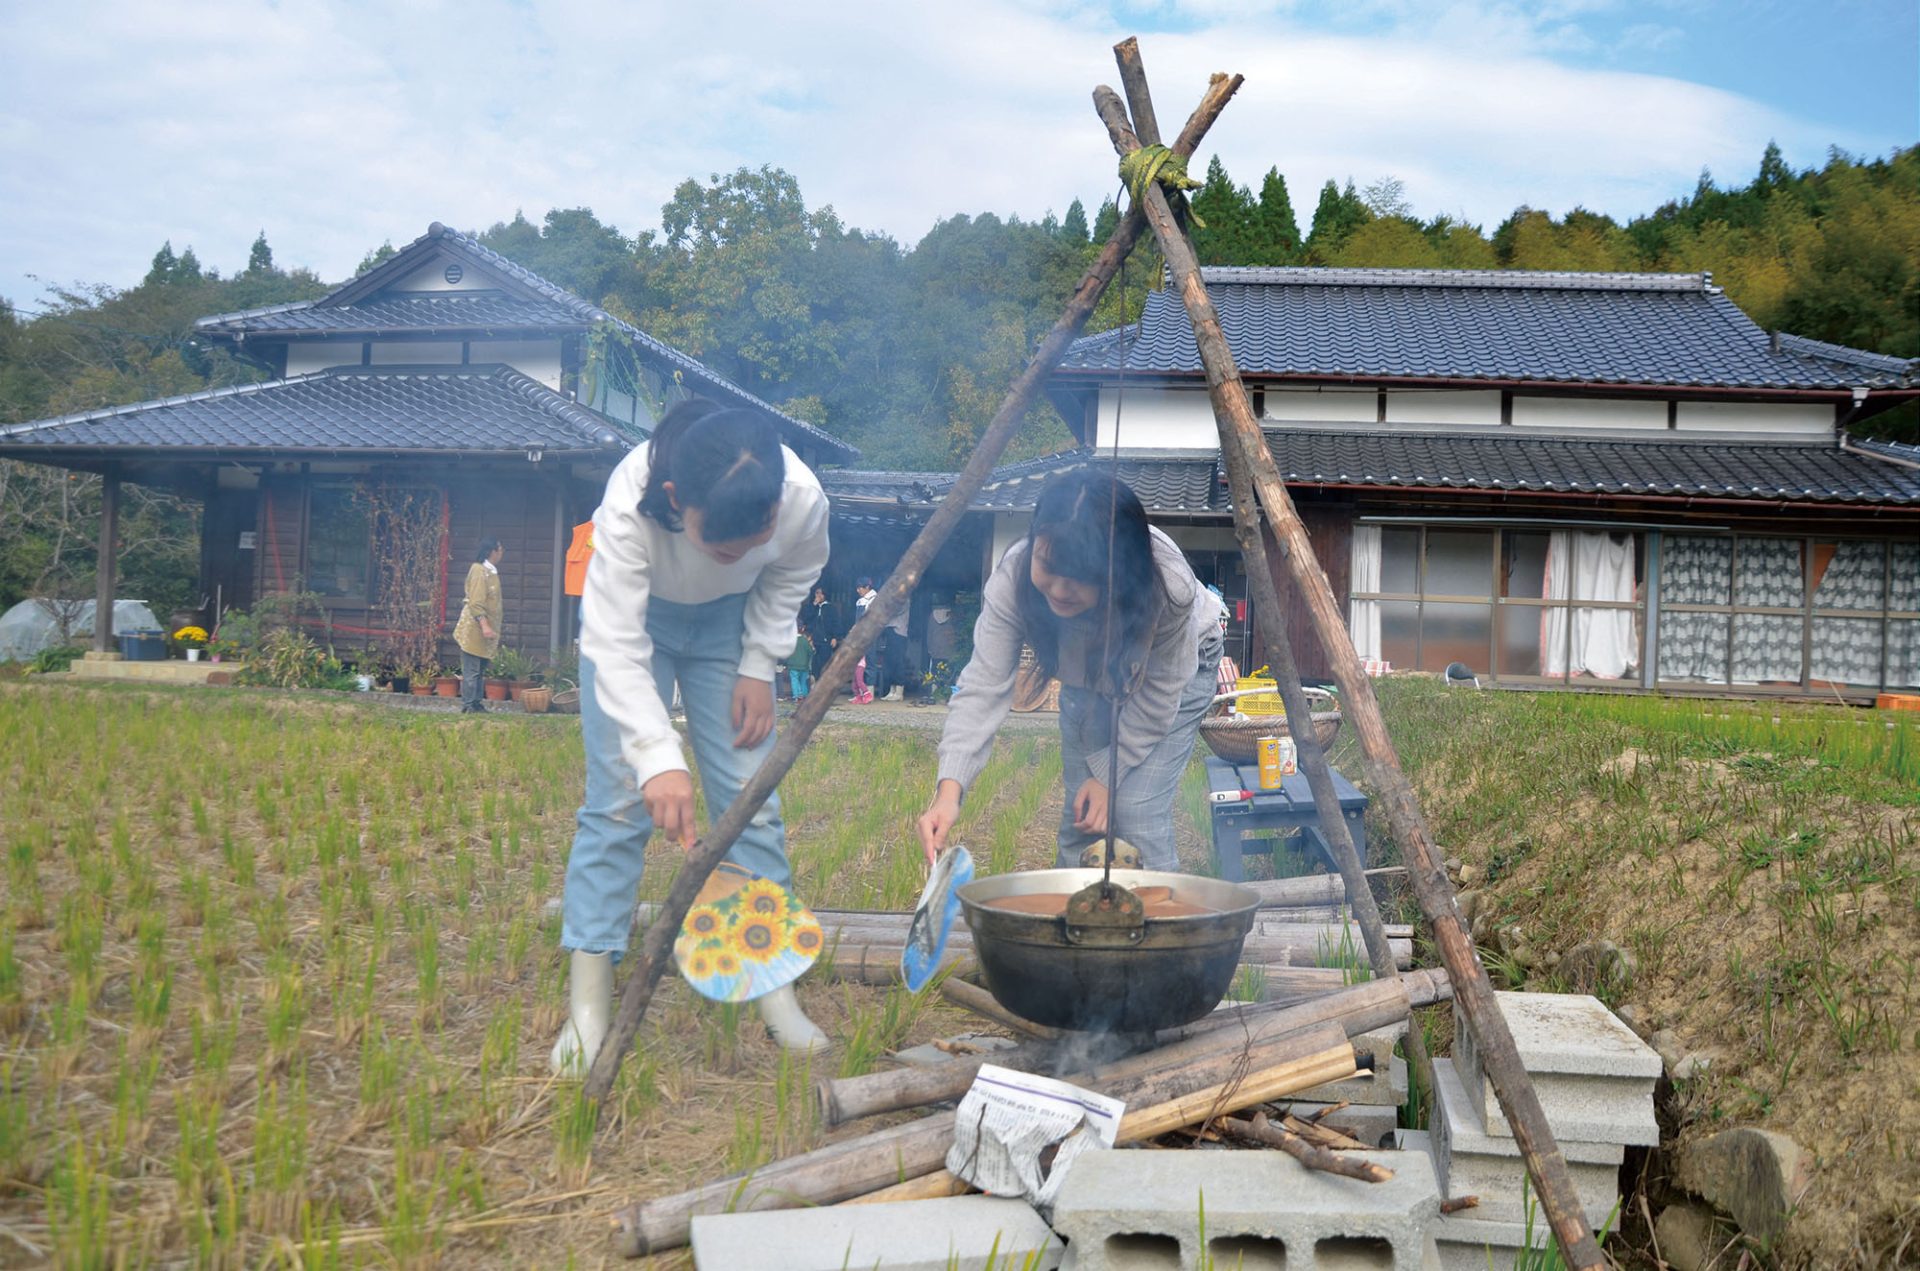 熊本県農泊等グリーンツーリズムPR動画ができました | 地域のトピックス